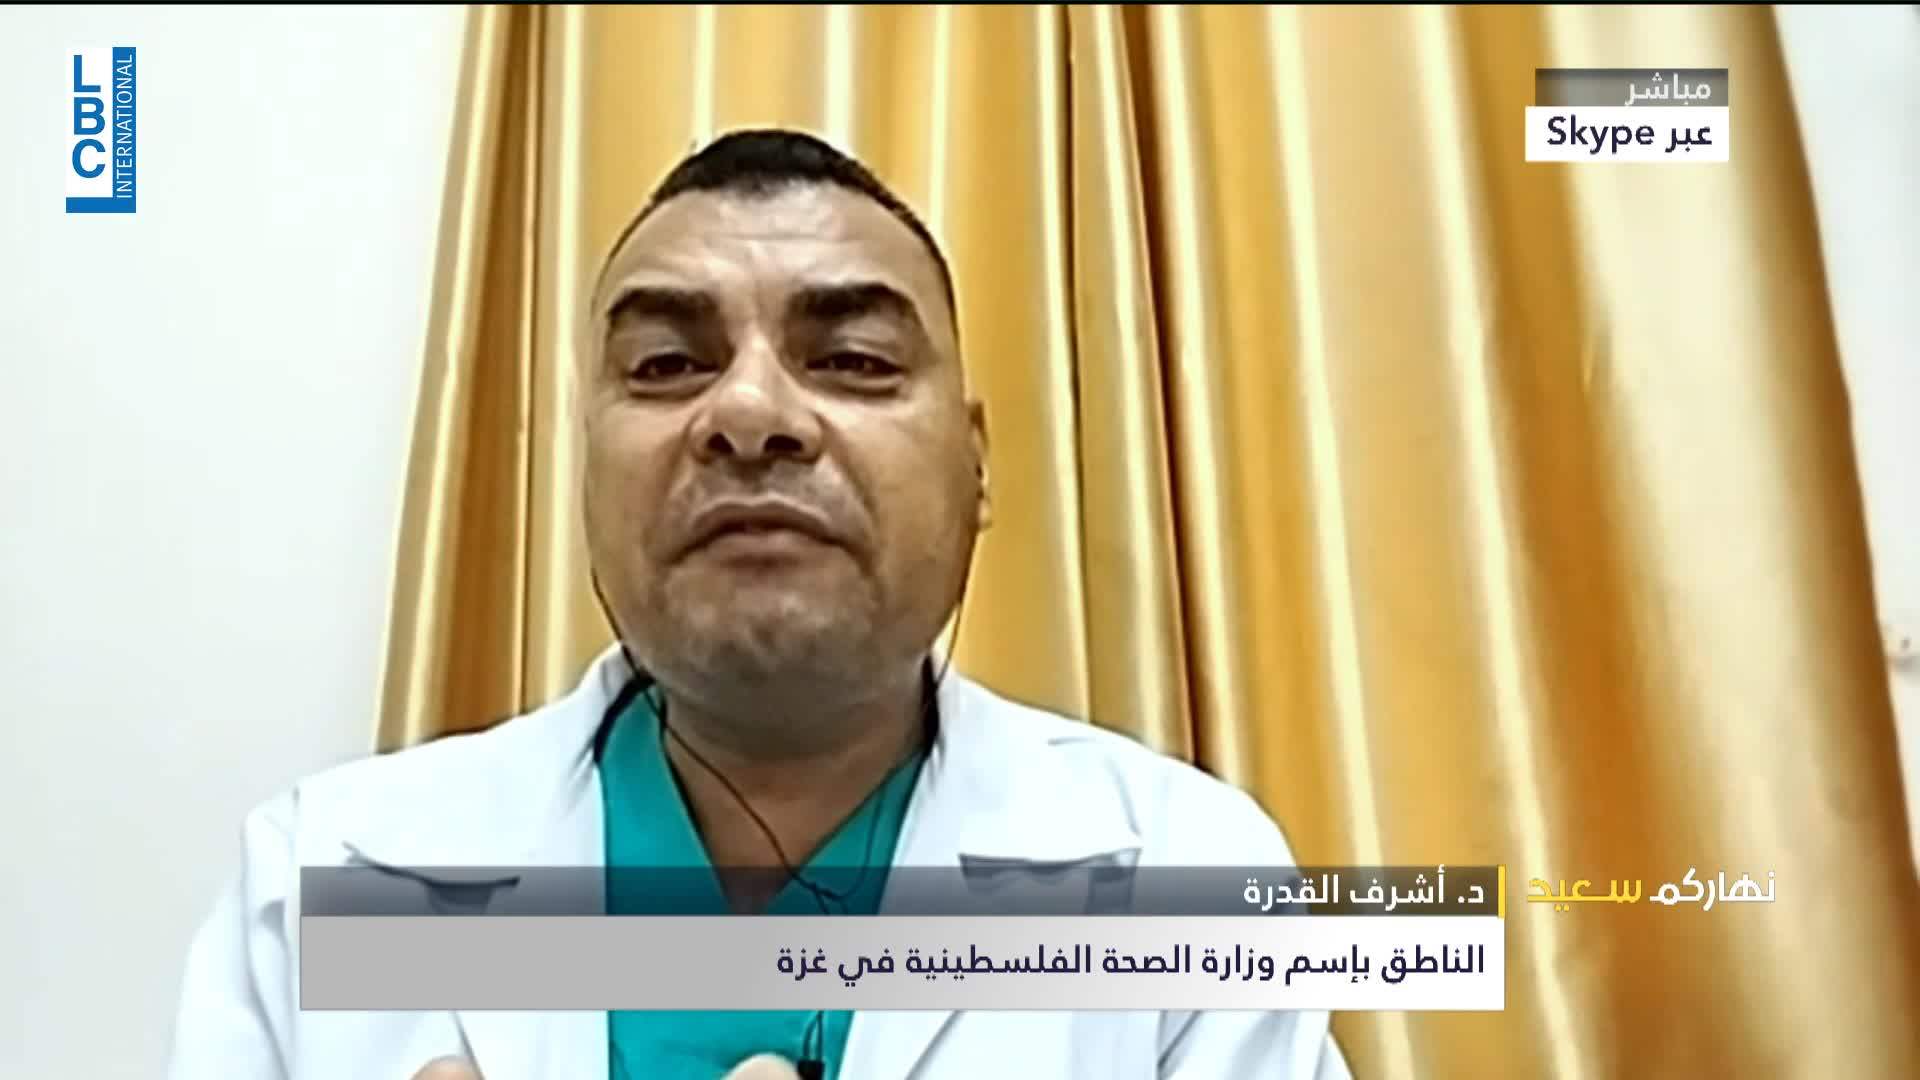 الناطق بإسم وزارة الصحة الفلسطينية في غزة للـLBCI: نعمل الآن في 6 مستشفيات فقط لإنقاذ حياة الجرحى جراء العدوان